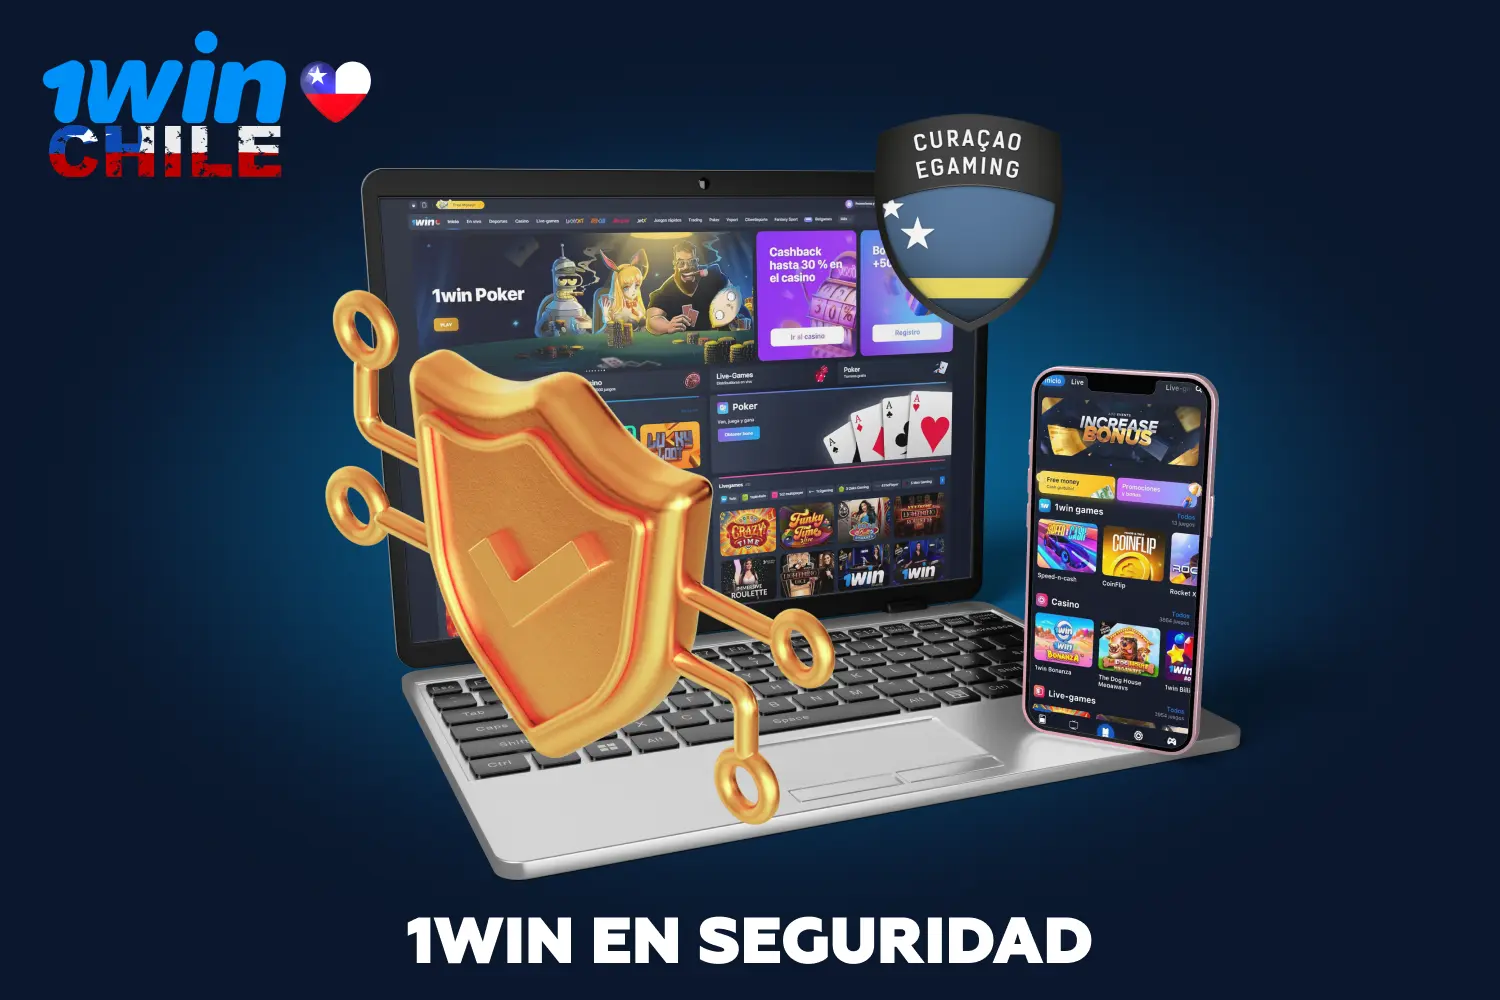 Los jugadores de Chile pueden estar seguros de que utilizar la aplicación 1win es seguro gracias a su alto grado de protección